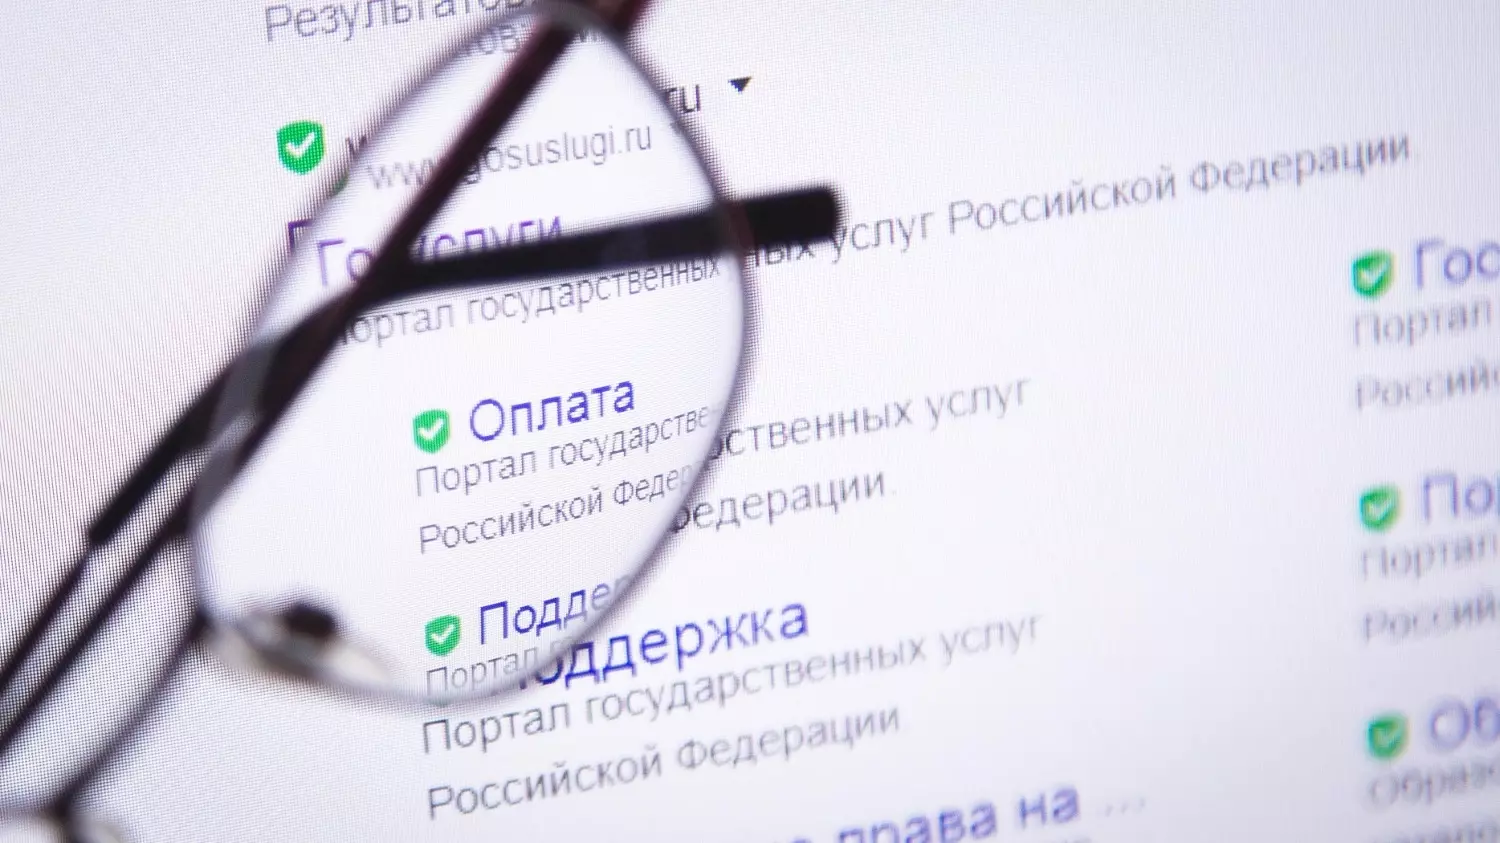 Самым обсуждаемым нововведением, по словам собеседника, является авторизация пользователей на российских сайтах.